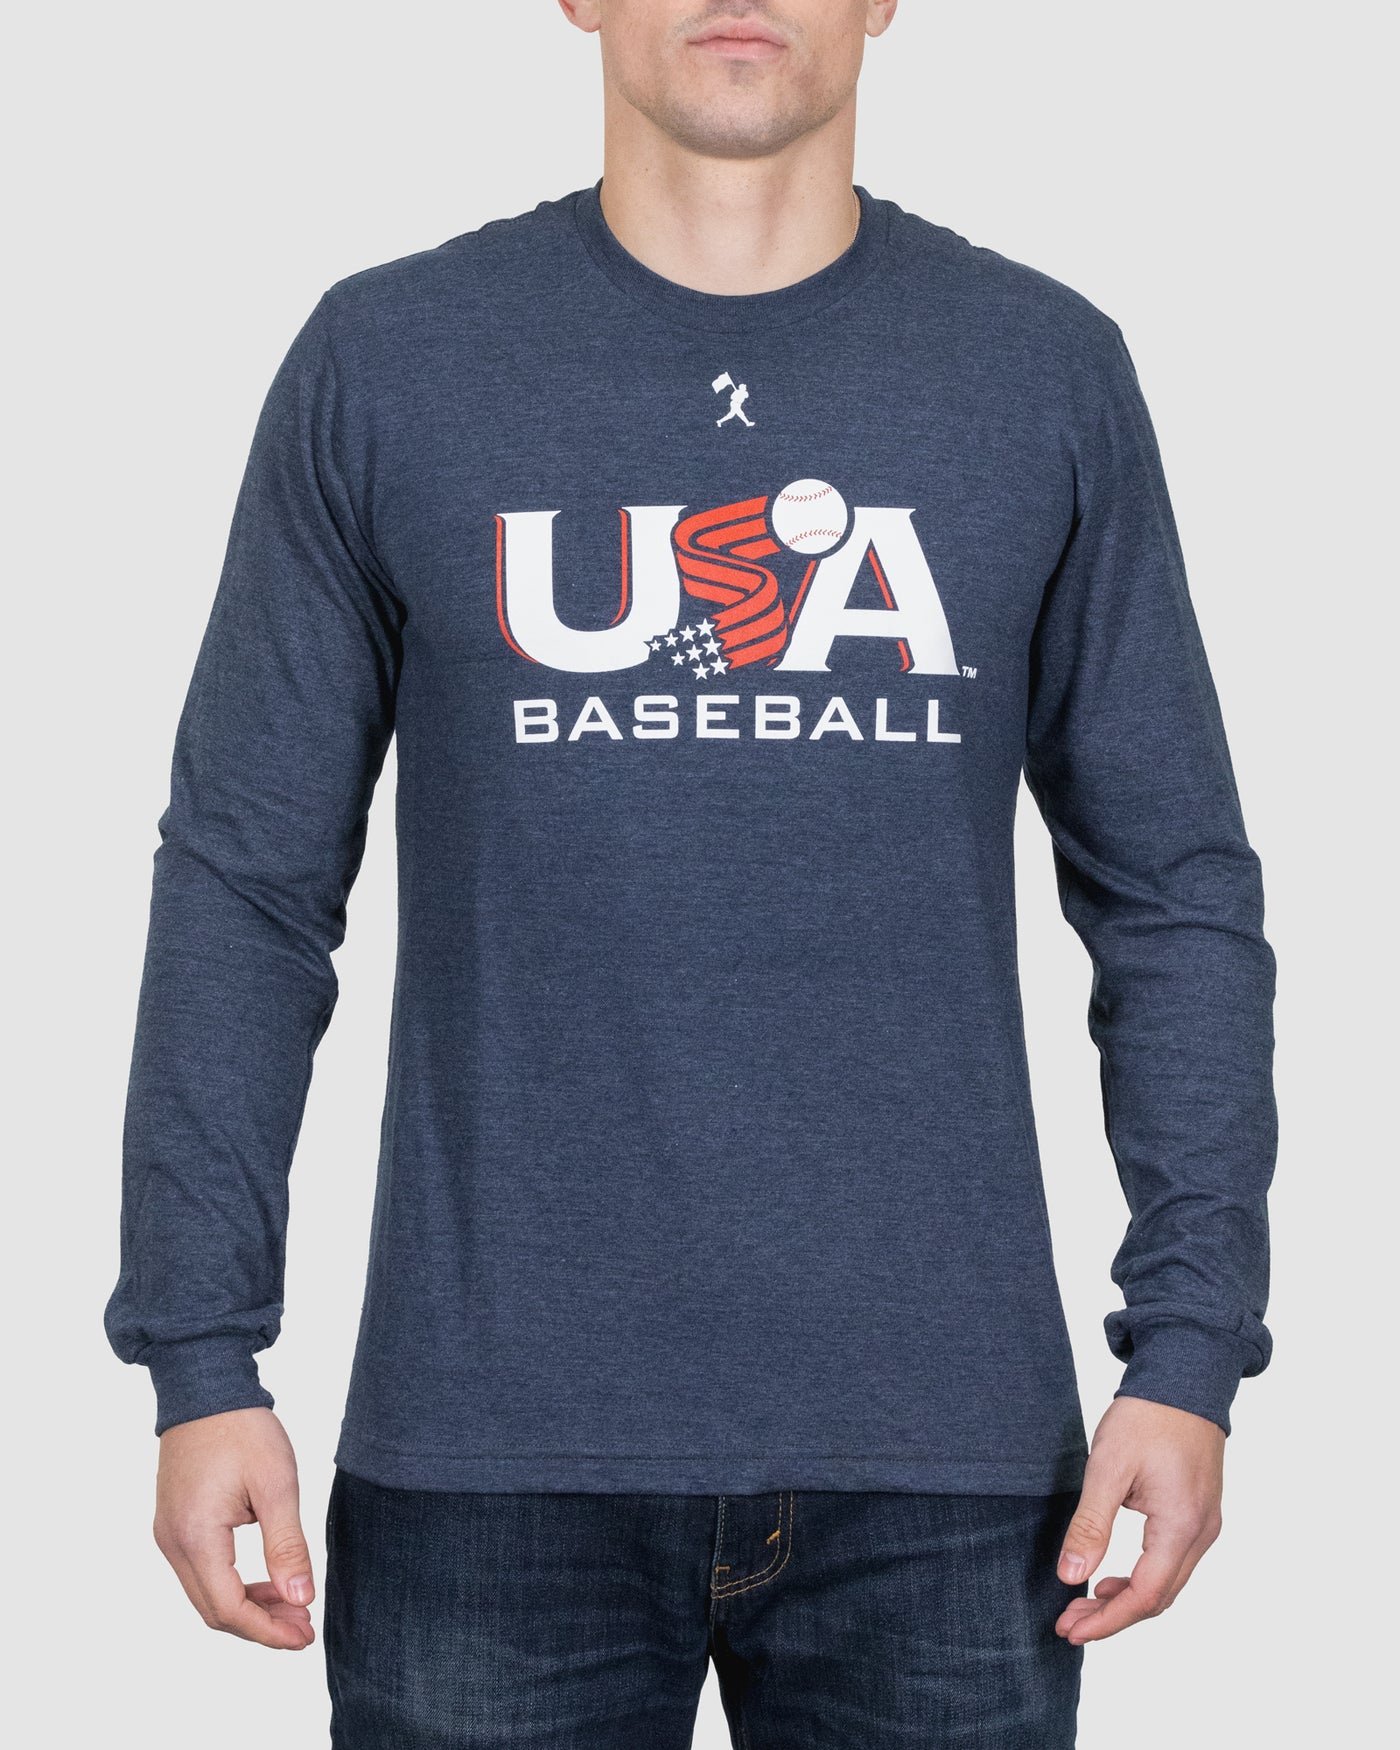 Baseballism x USA Béisbol de manga larga - Azul marino 